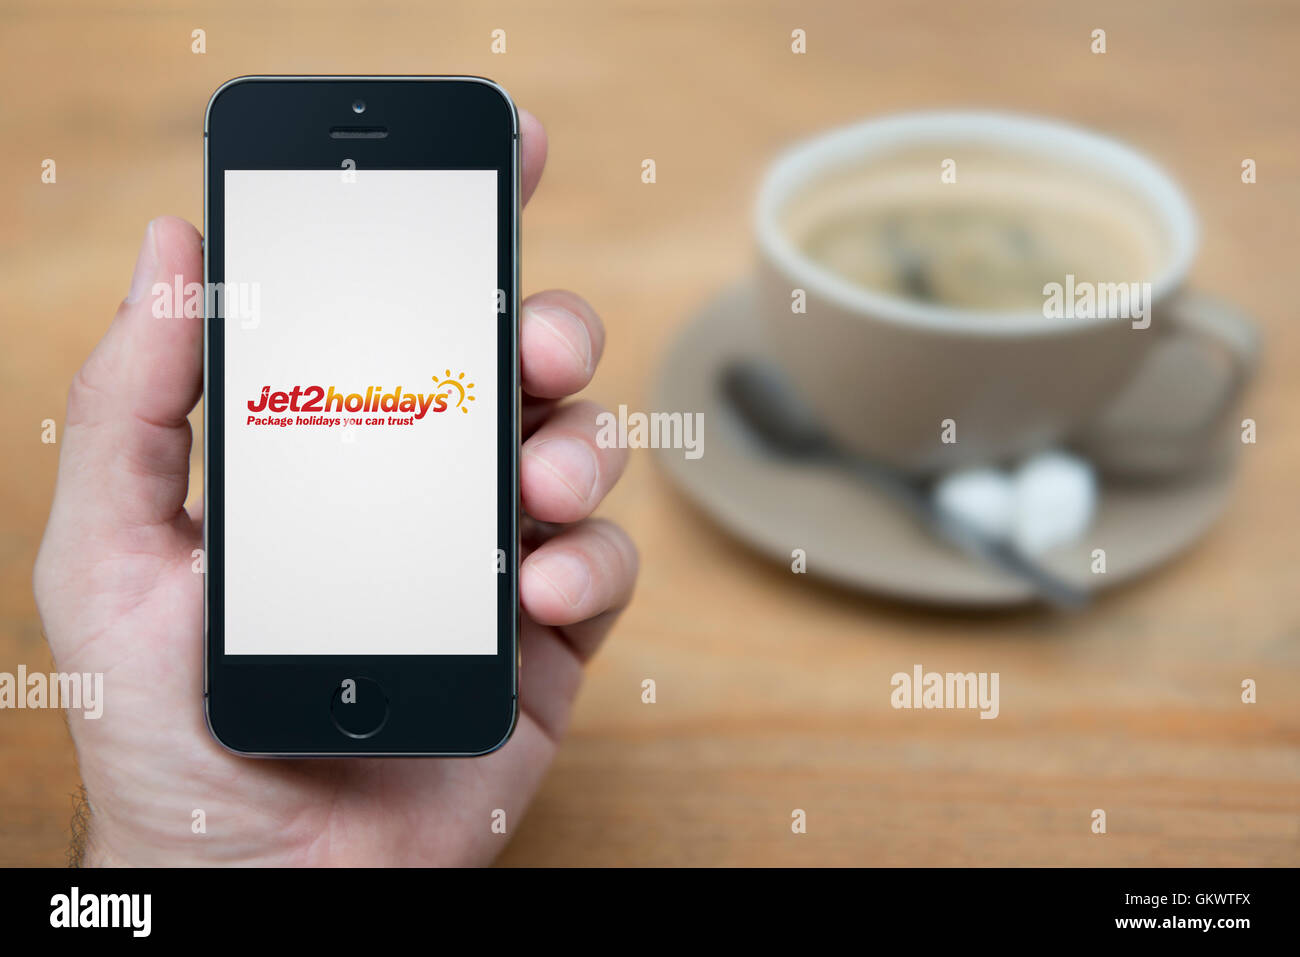 Un uomo guarda al suo iPhone che visualizza il Jet2 logo vacanze, mentre sat con una tazza di caffè (solo uso editoriale). Foto Stock